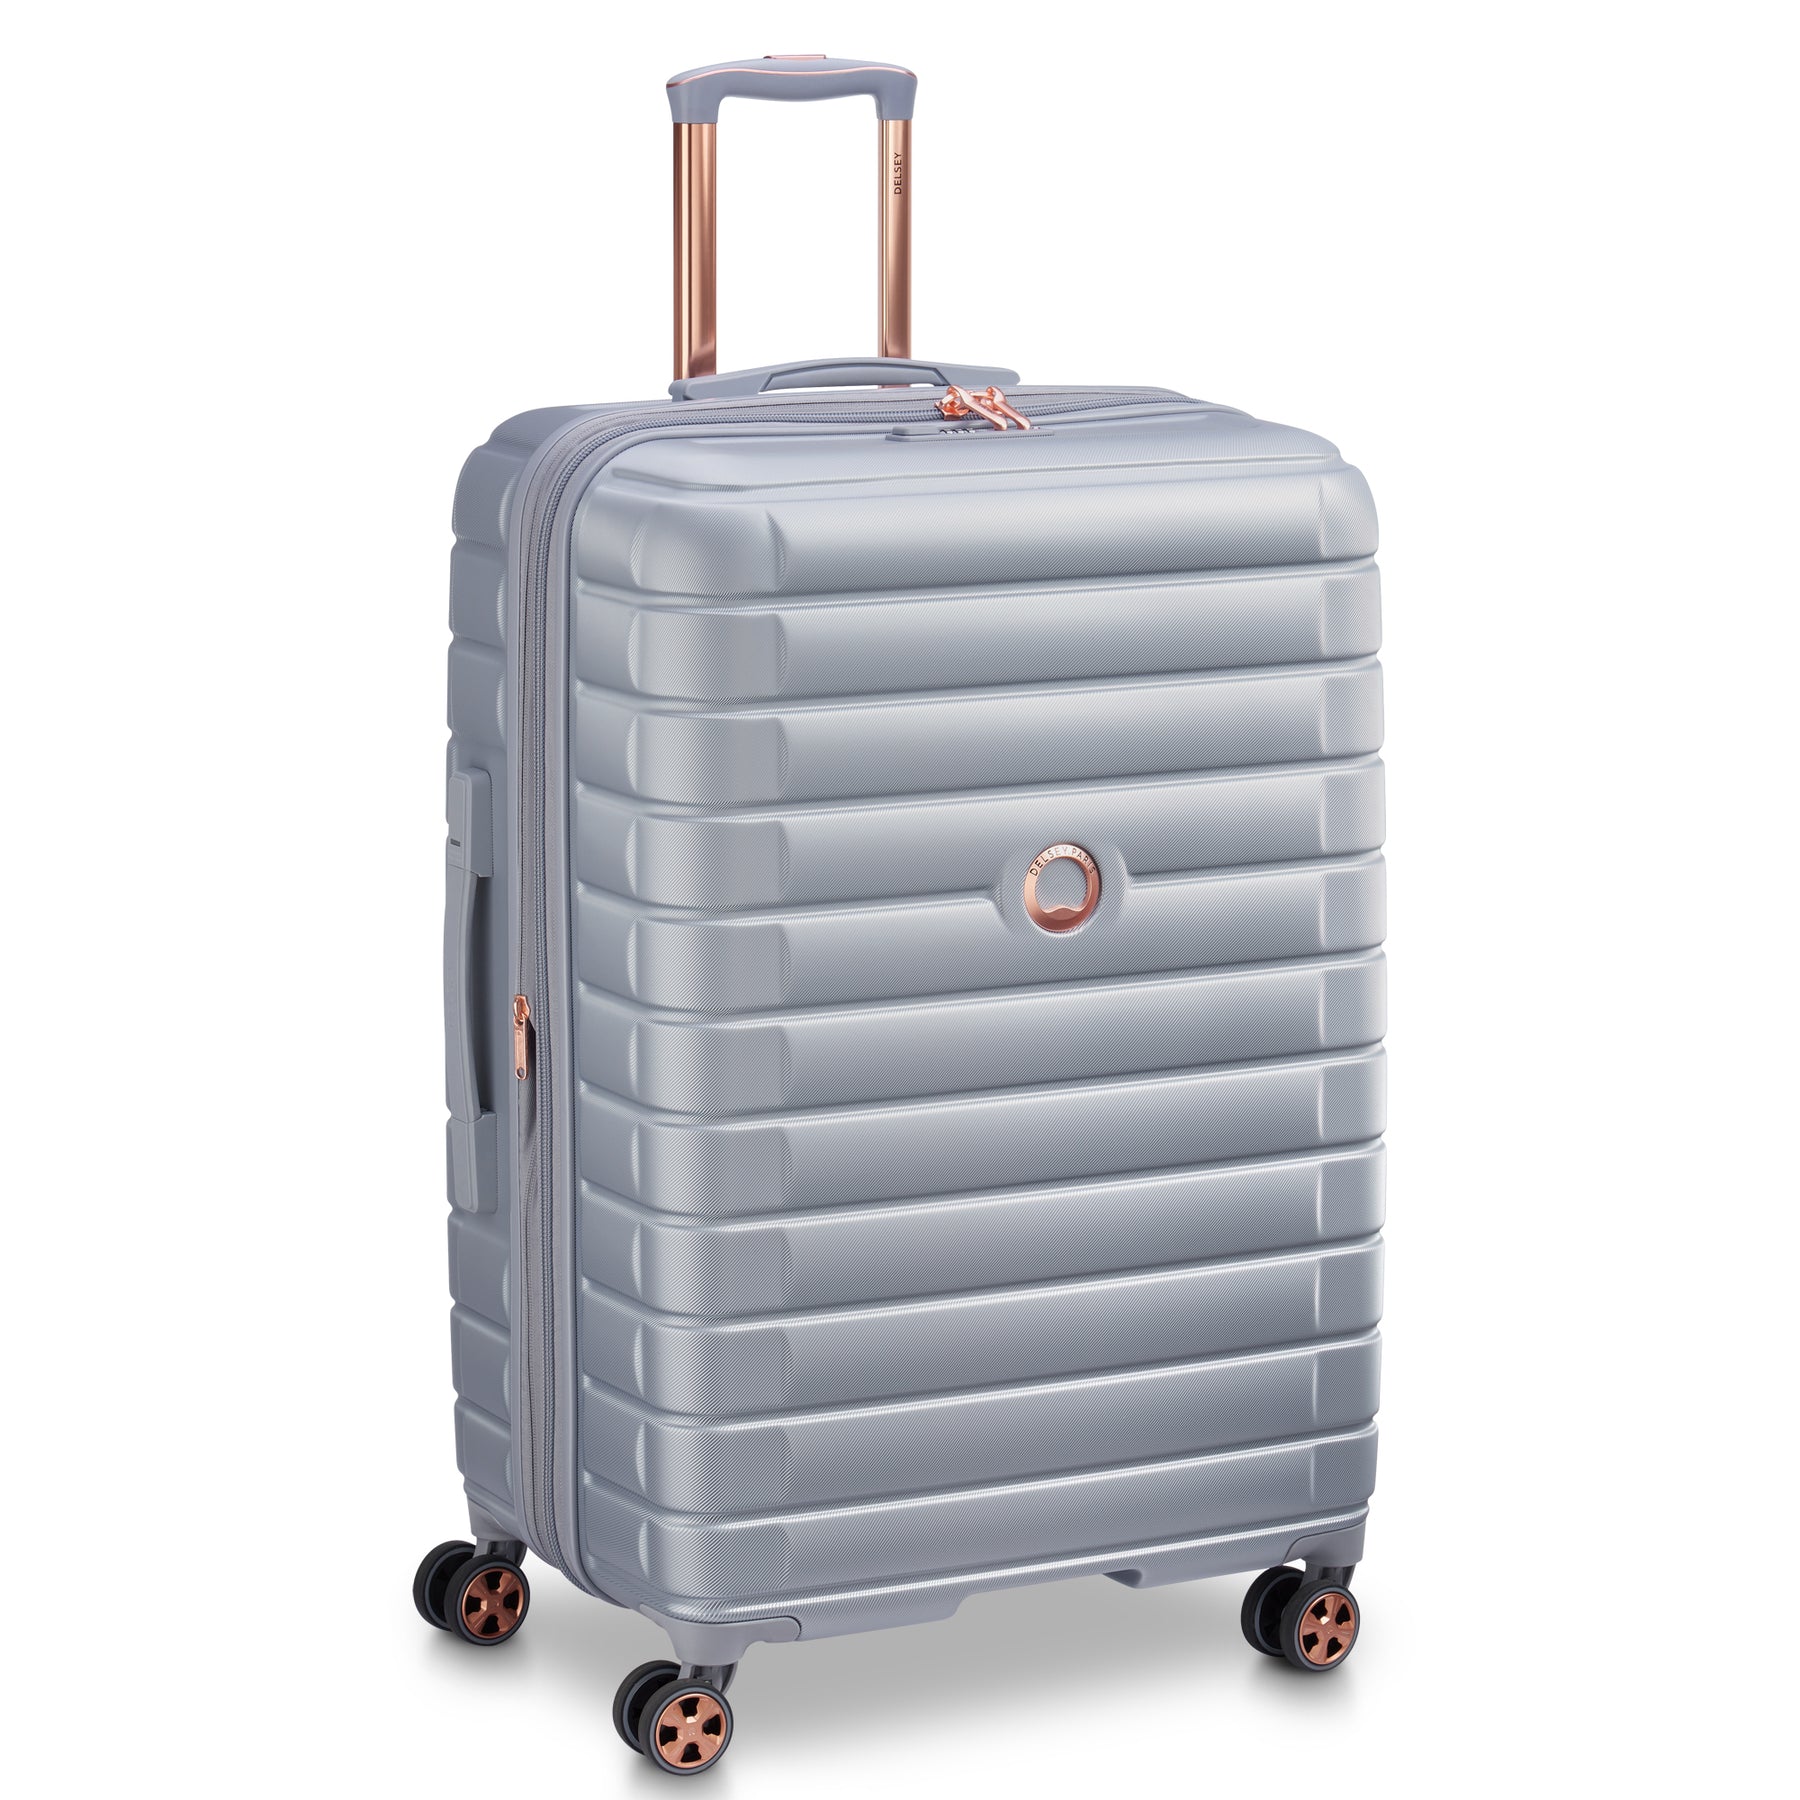 نکته خرید - قیمت روز چمدان دلسی مدل SHADOW 5.0 کد 2878819 سایز متوسط خرید